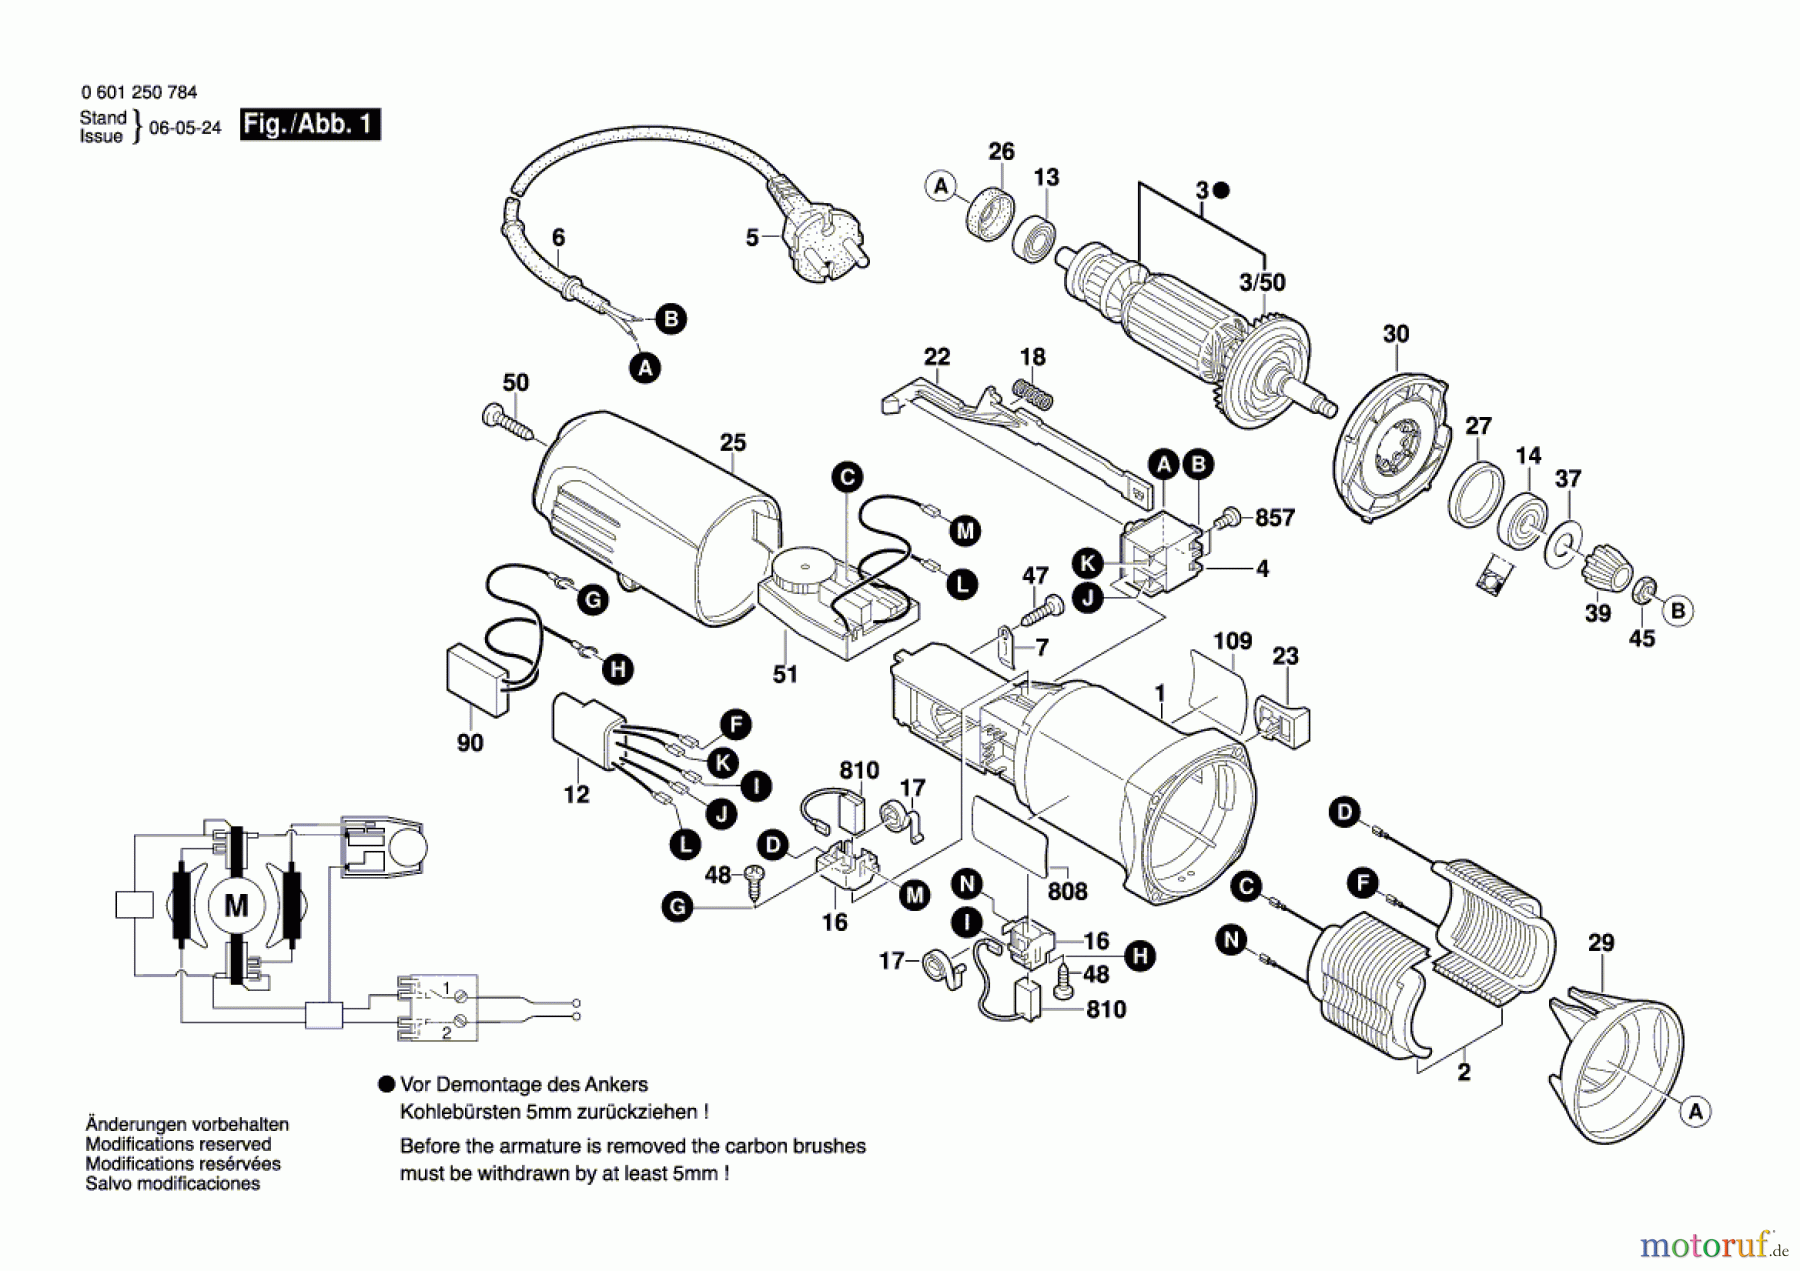  Bosch Werkzeug Exzenterschleifer BROS-150 T Seite 1